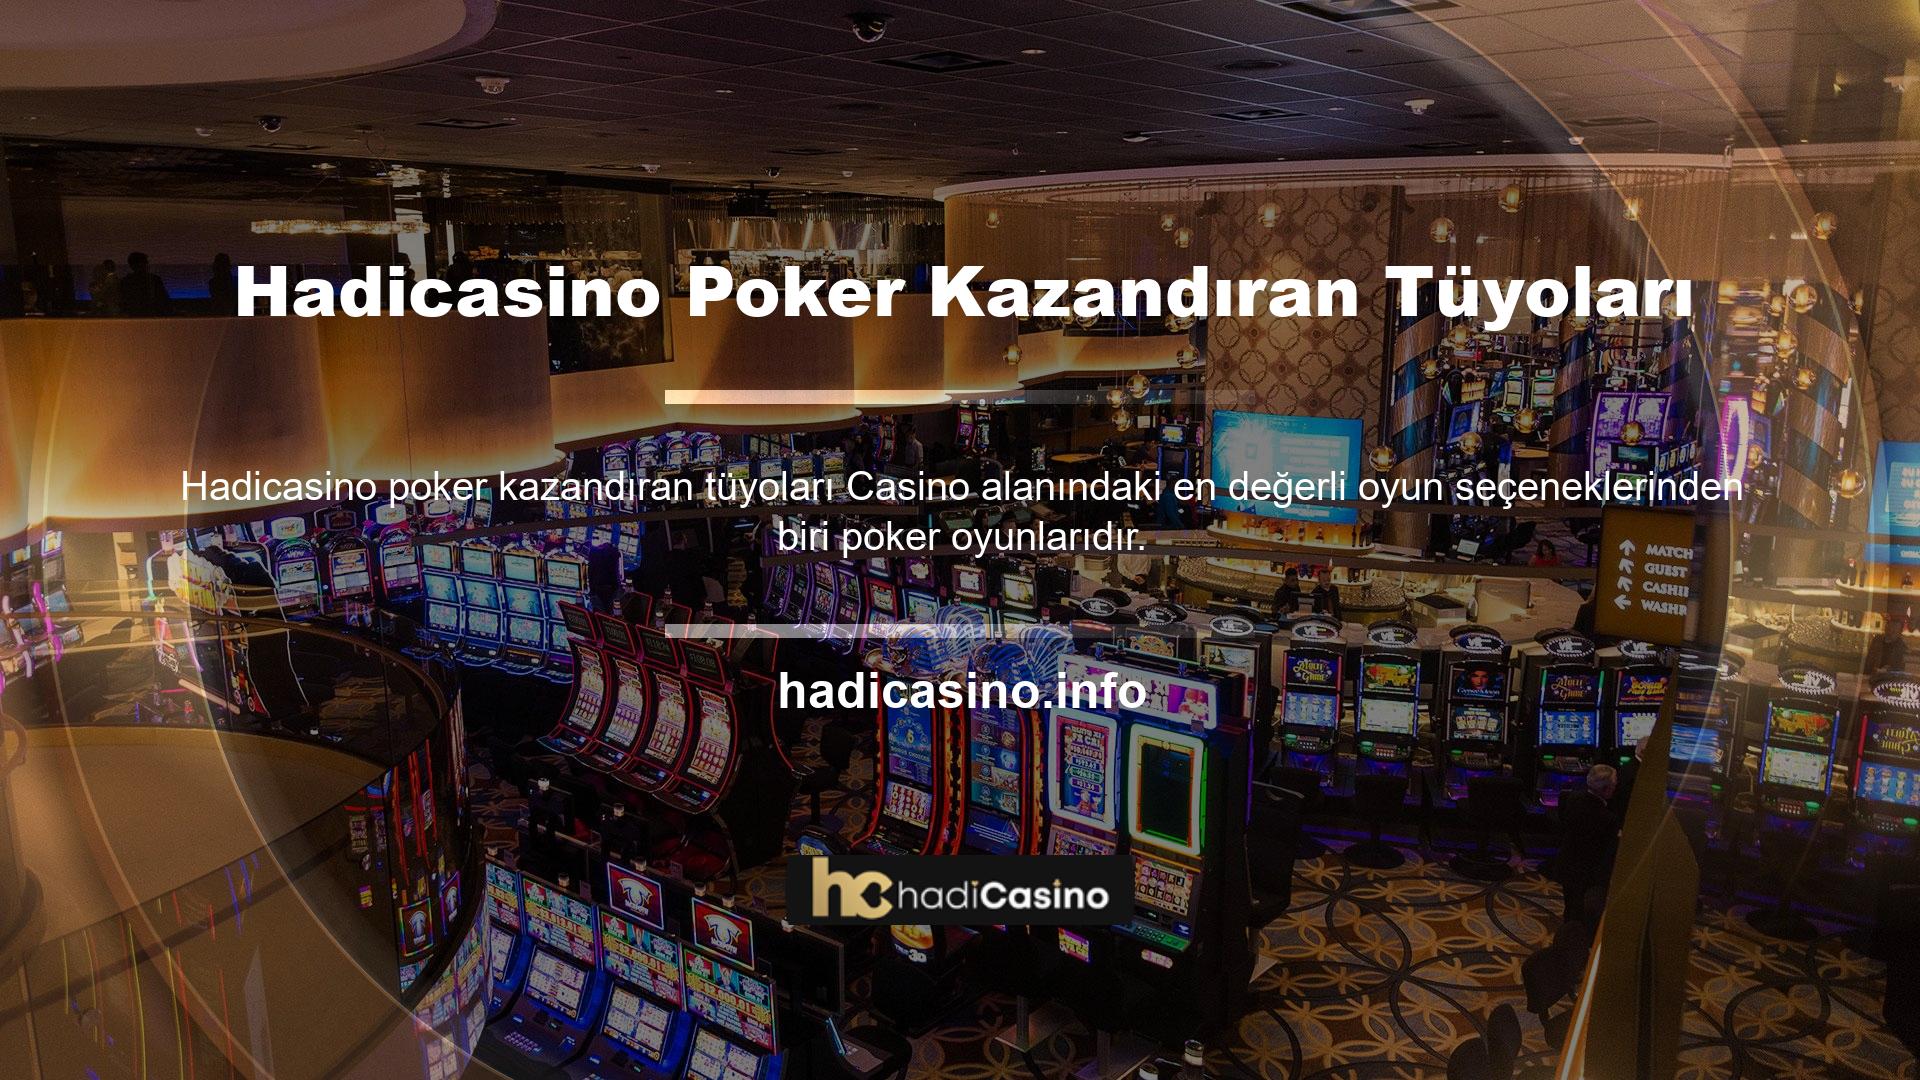 Yani Hadicasino poker oyunlarındaki kazanma taktikleri de ilginç, gerçek para kazanabileceğiniz eğlenceli bir sanal poker ortamı yaratıyor